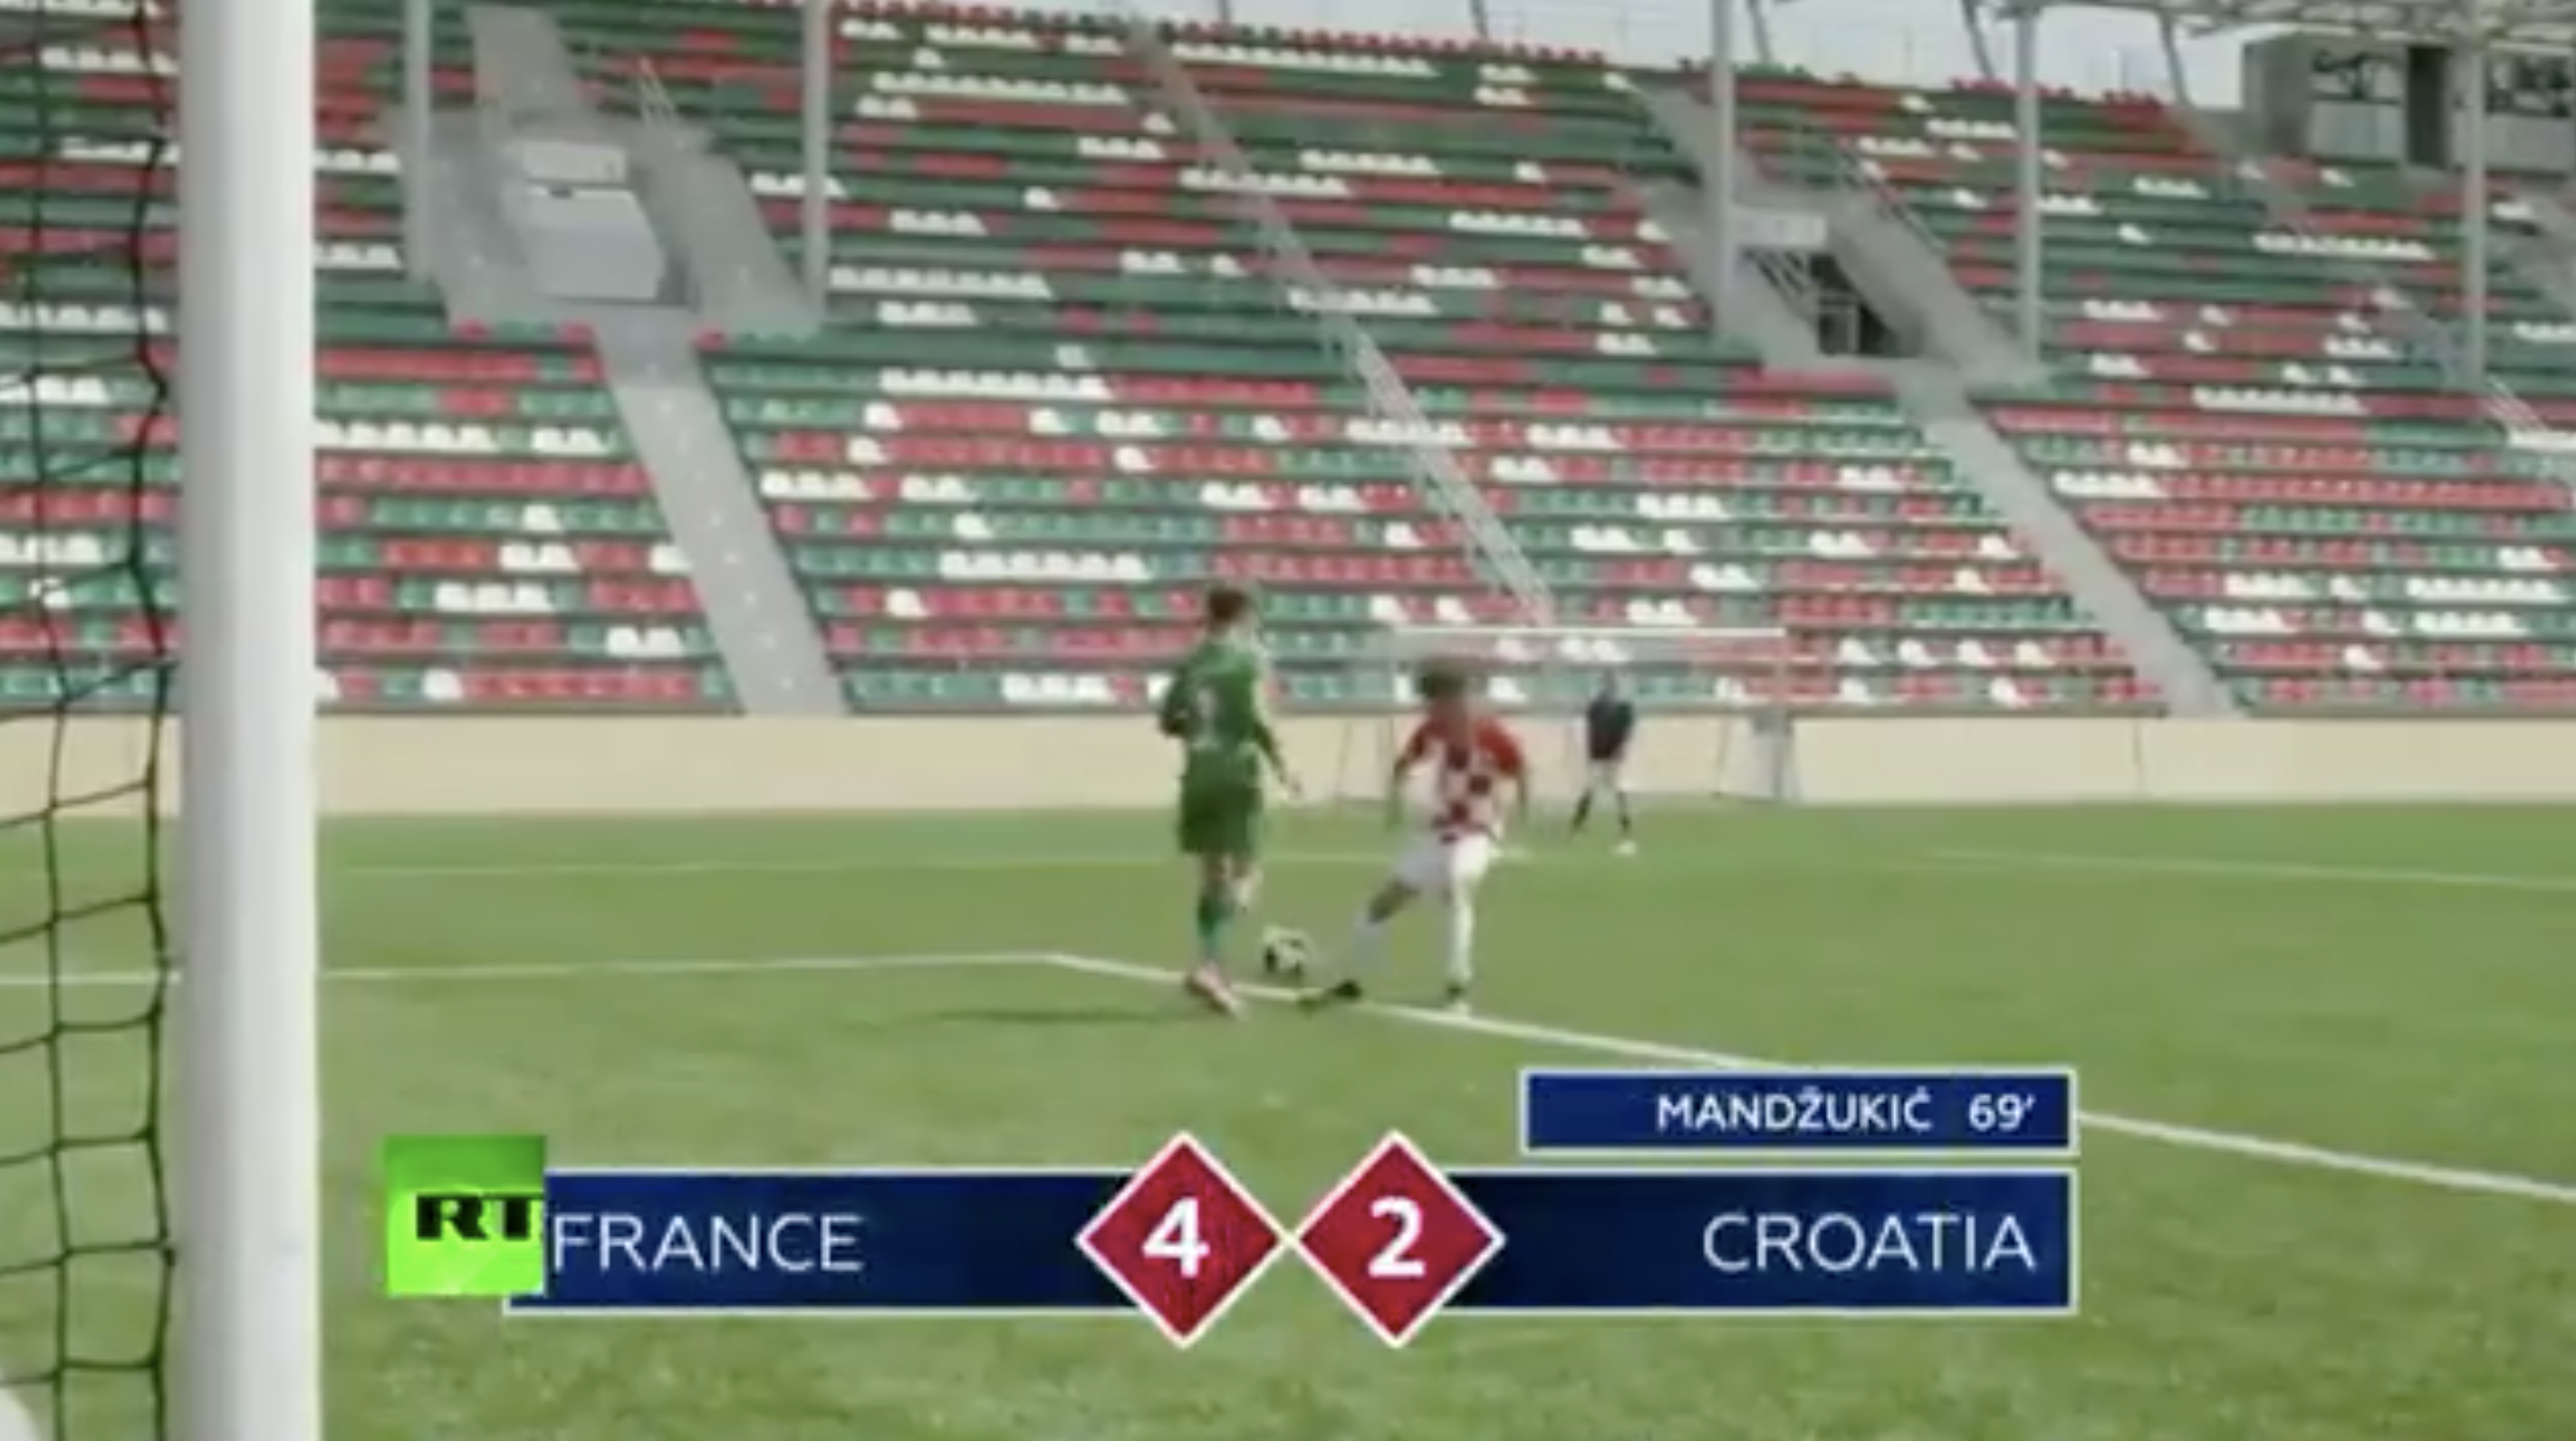 فيديو : أطفال صغار يعيدون تجسيم مباراة نهائي كأس العالم بين فرنسا و كرواتيا 